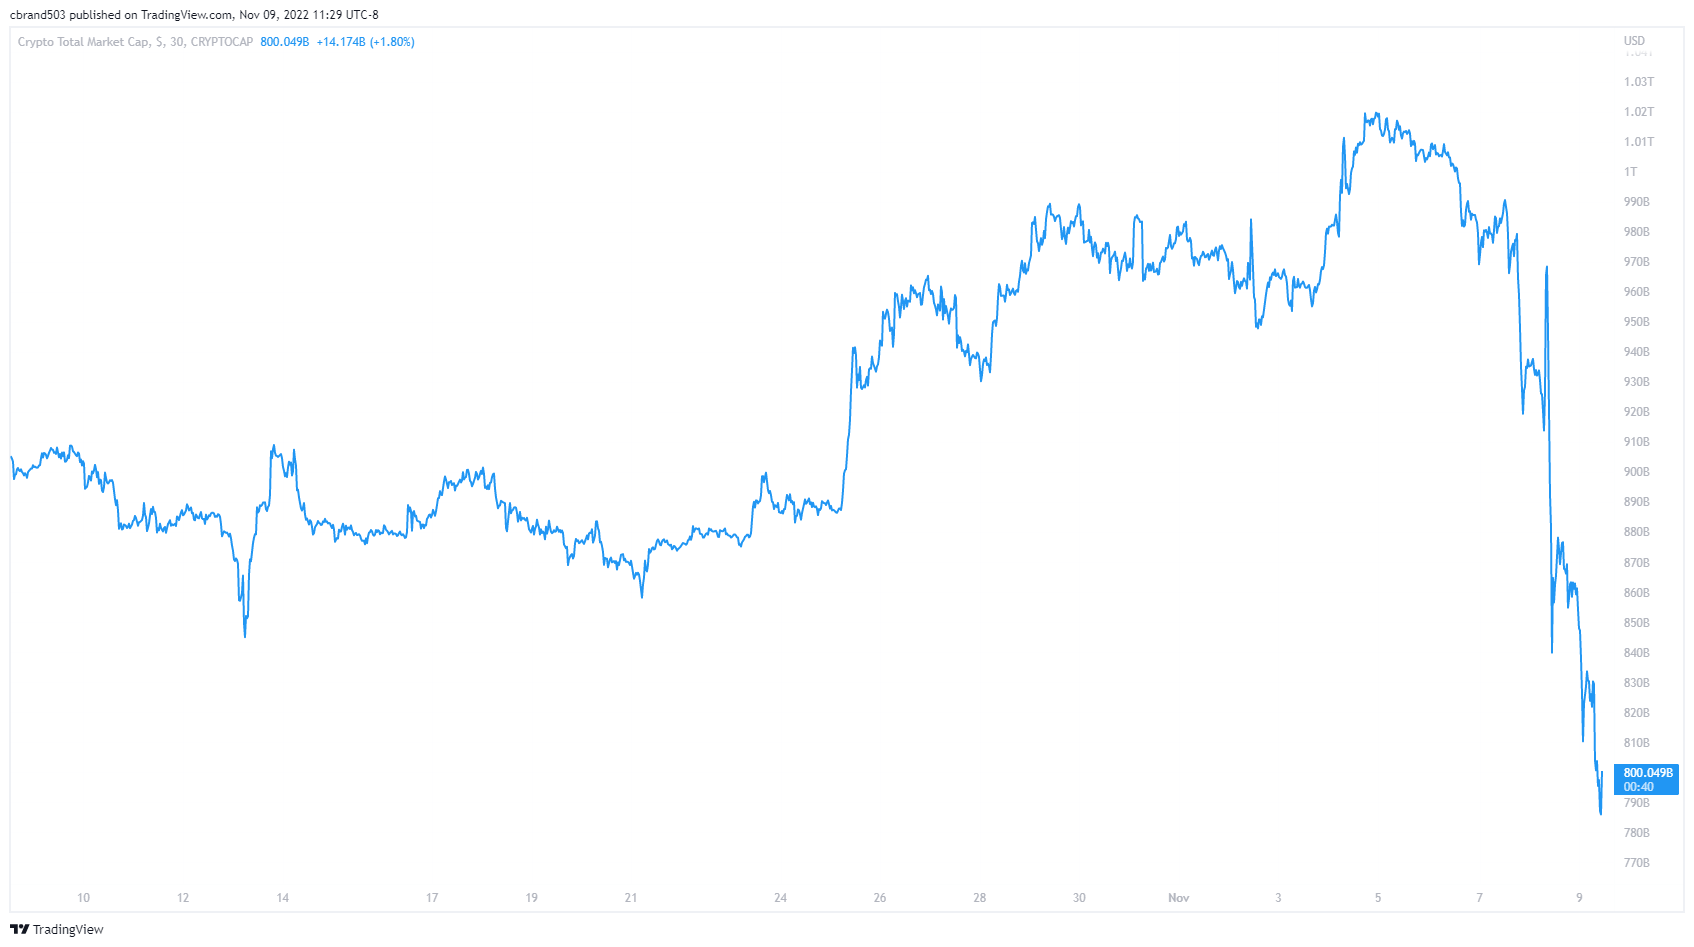 Crypto Total Market Cap chart courtesy of TradingView.com